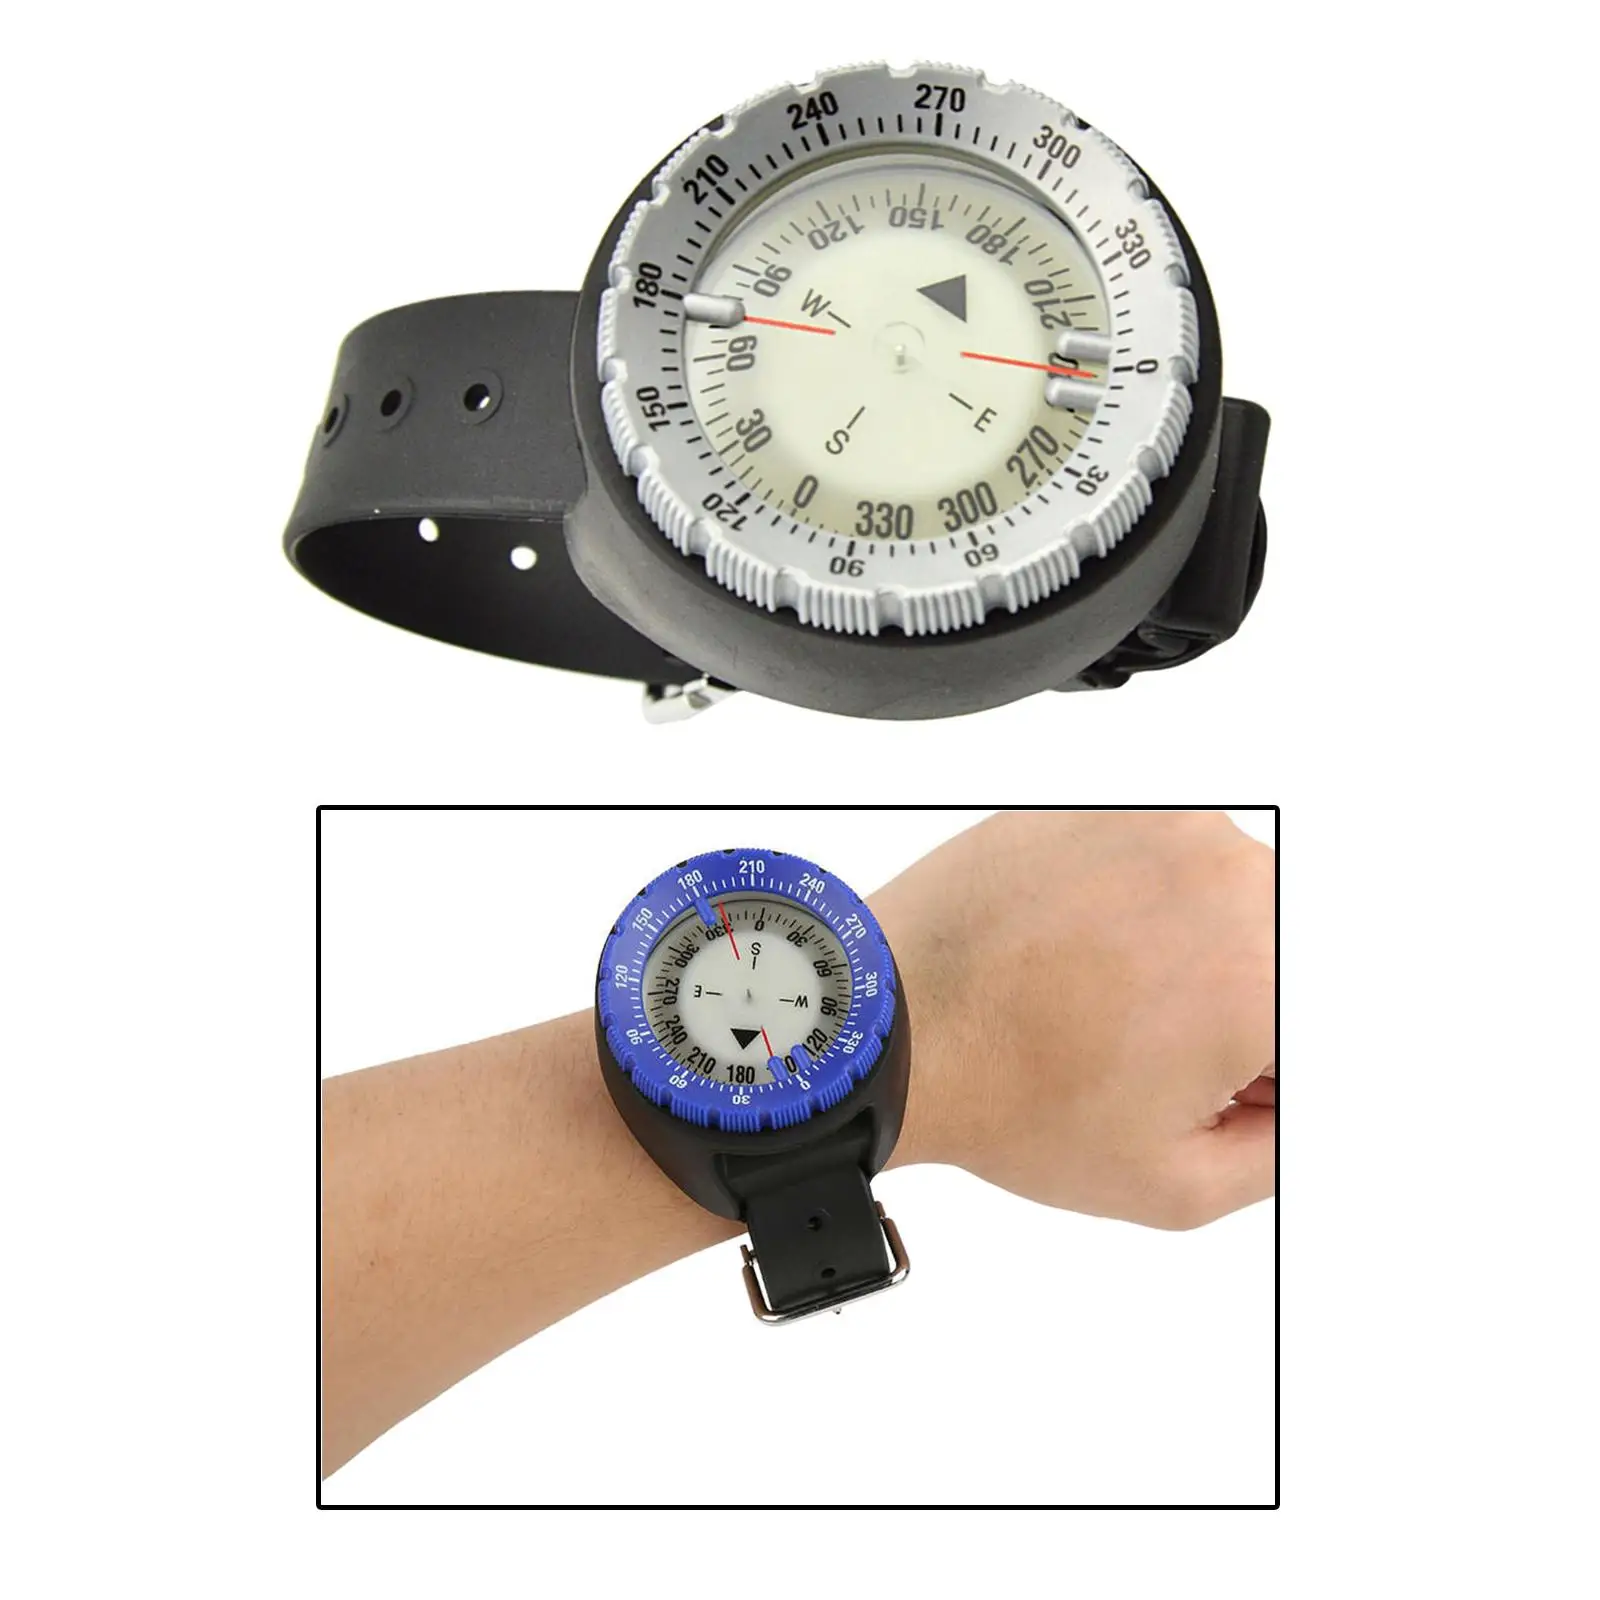   Underwater Wrist Compass Gauge Max Depth 50m Waterproof Outdoor